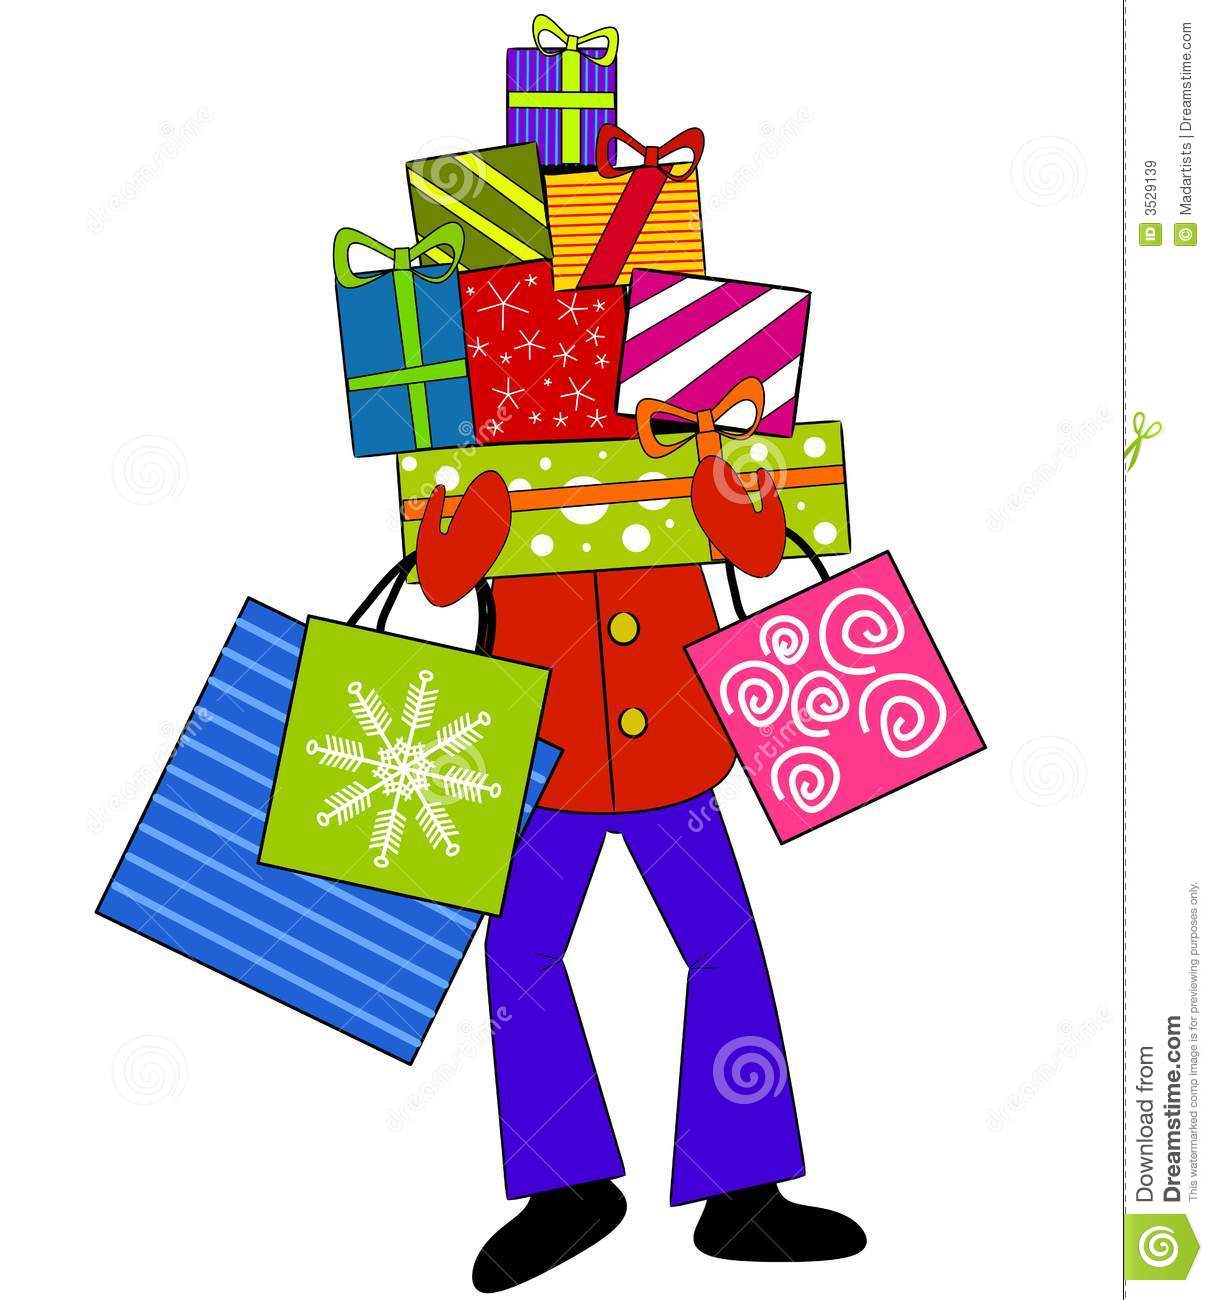 christmas shopping: Christmas